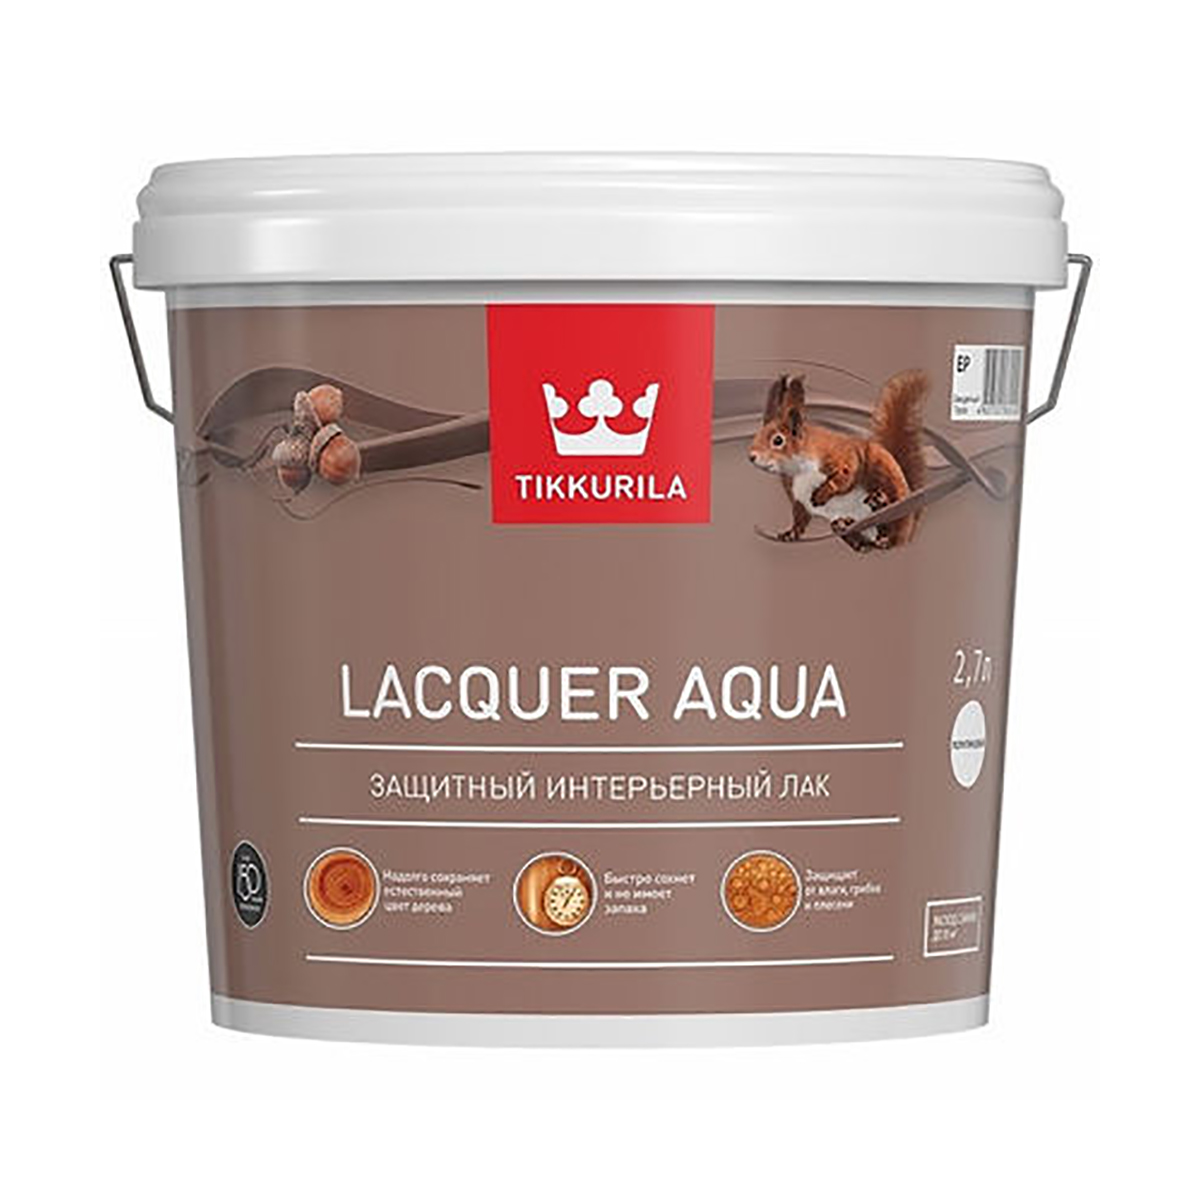 Лак Tikkurila Euro Lacquer Aqua (700001138) бесцветный 2.7л краска интерьерная euro matt 3 евро 3 tikkurila 9л бесцветный база с